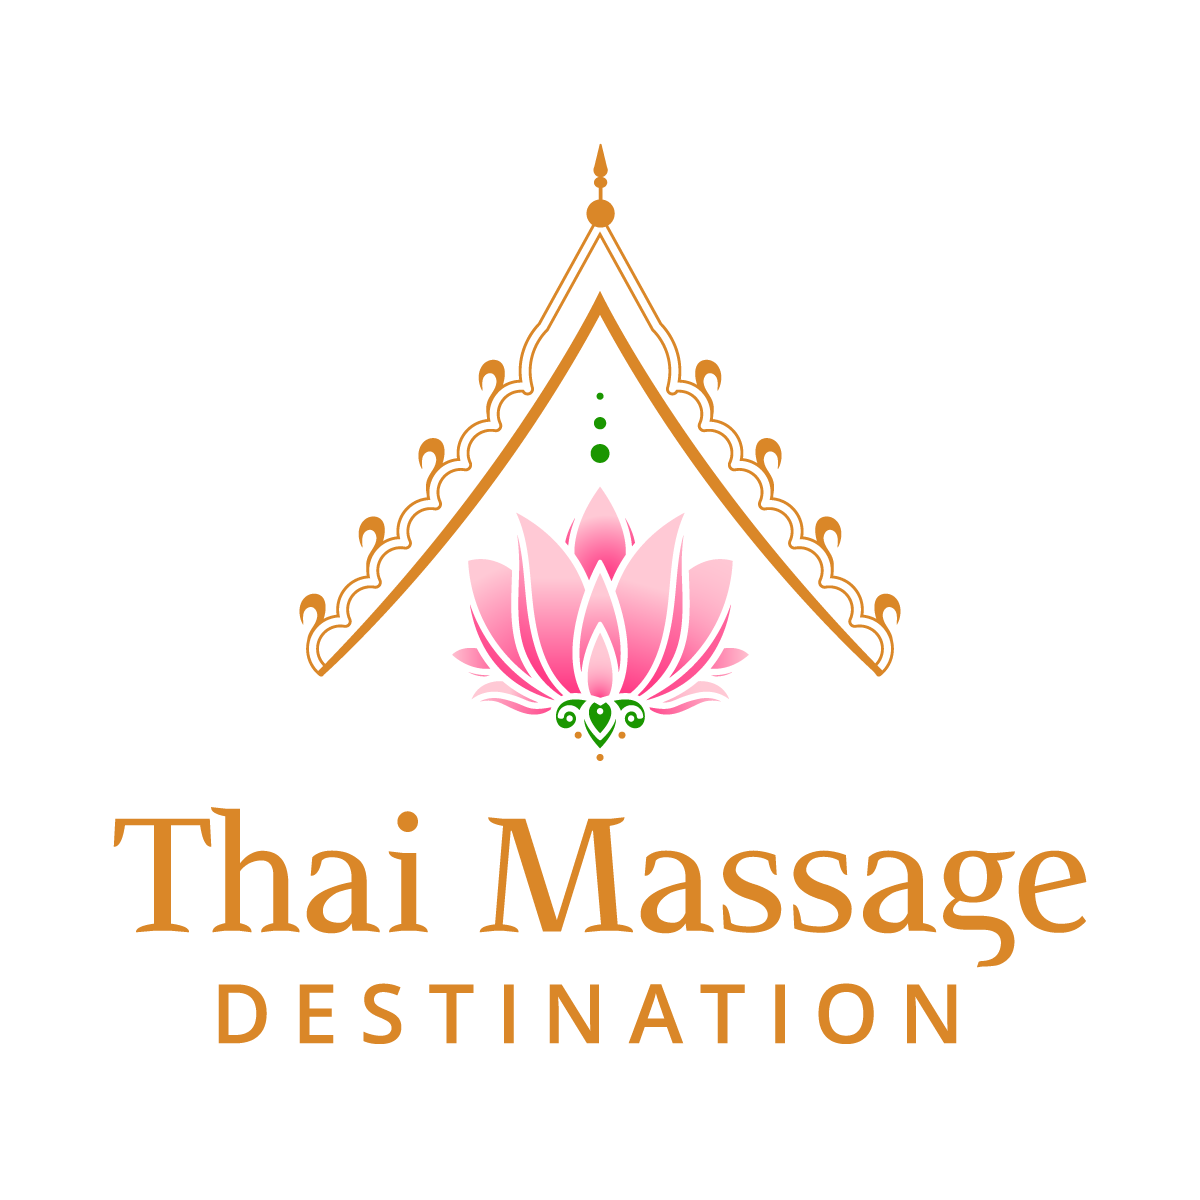 Thai Massage Destination